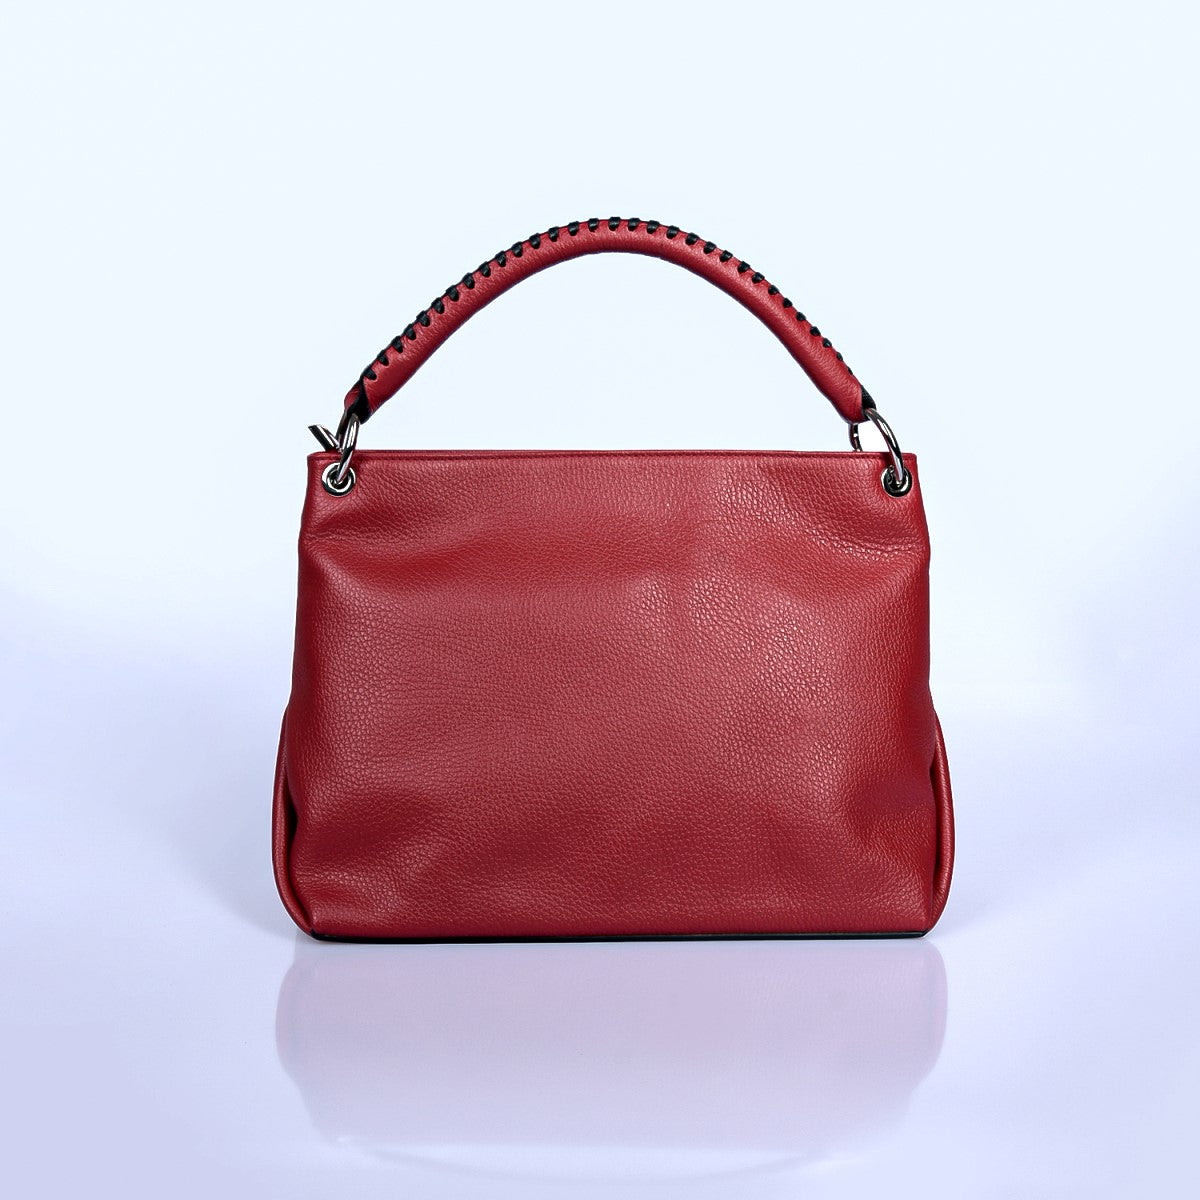 Tumbled genuine leather handbag art. 112366